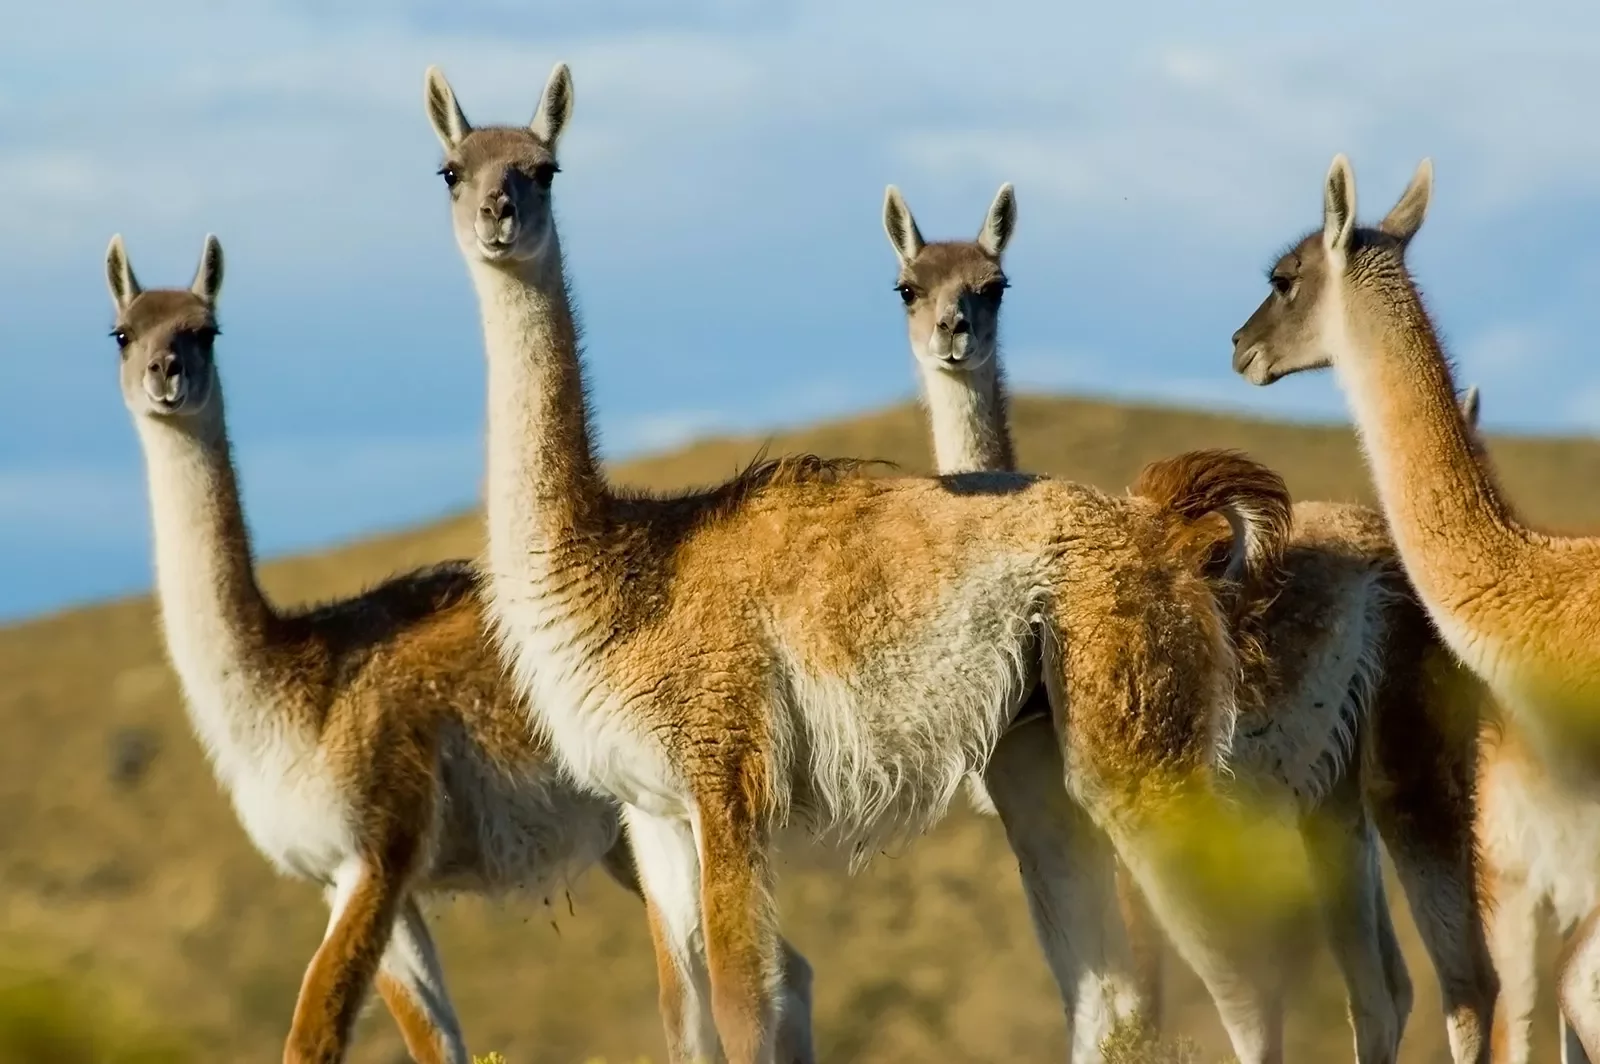 Close up shot of four llamas.